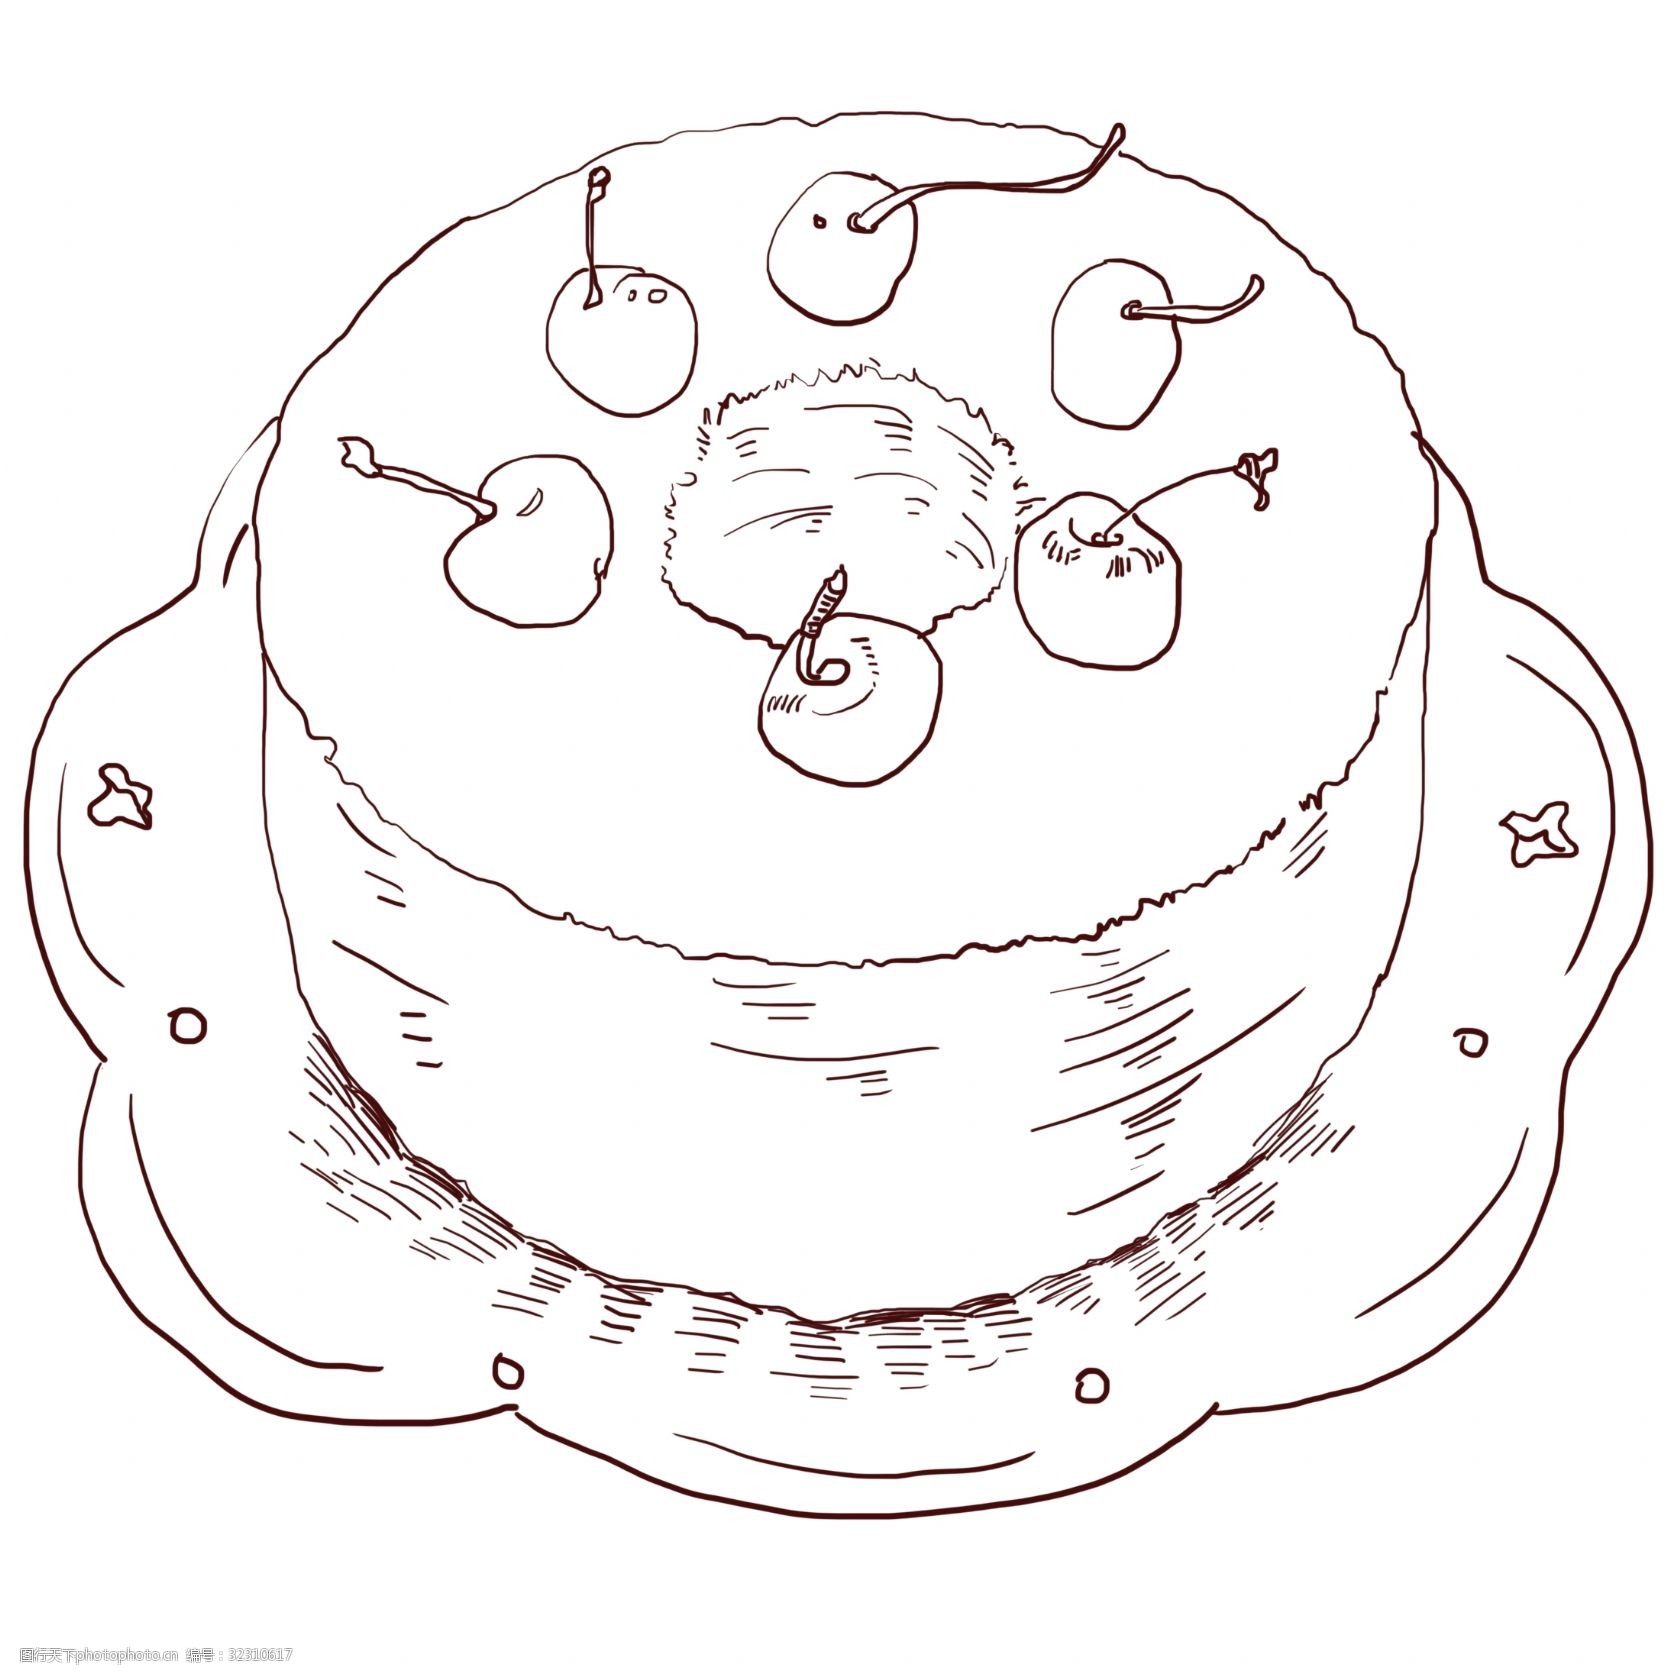 关键词:线描樱桃蛋糕插画 线描蛋糕 樱桃蛋糕插画 美味的蛋糕 水果